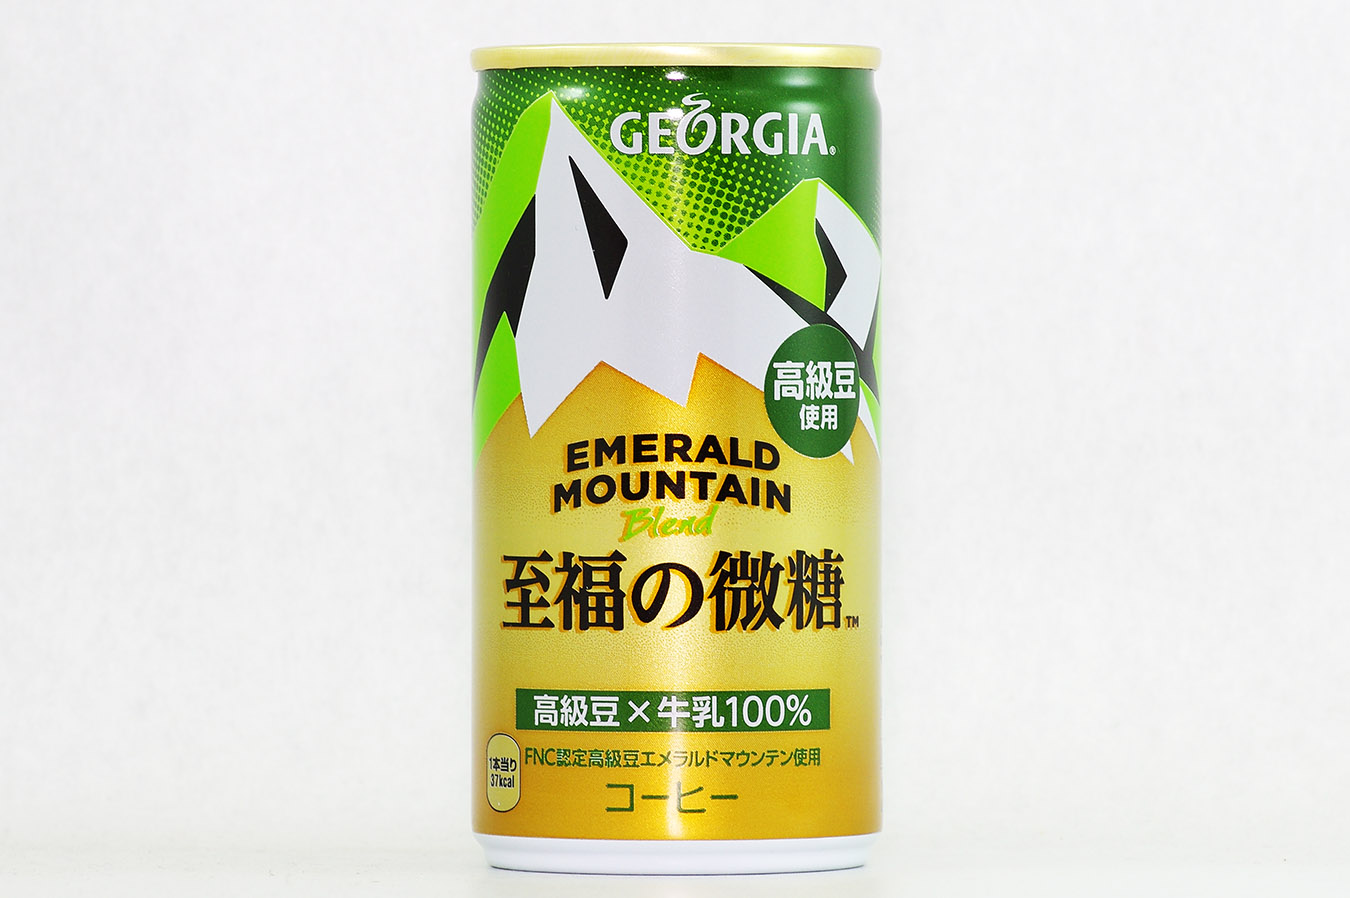 GEORGIA エメラルドマウンテンブレンド 至福の微糖 スチール缶 2016年2月